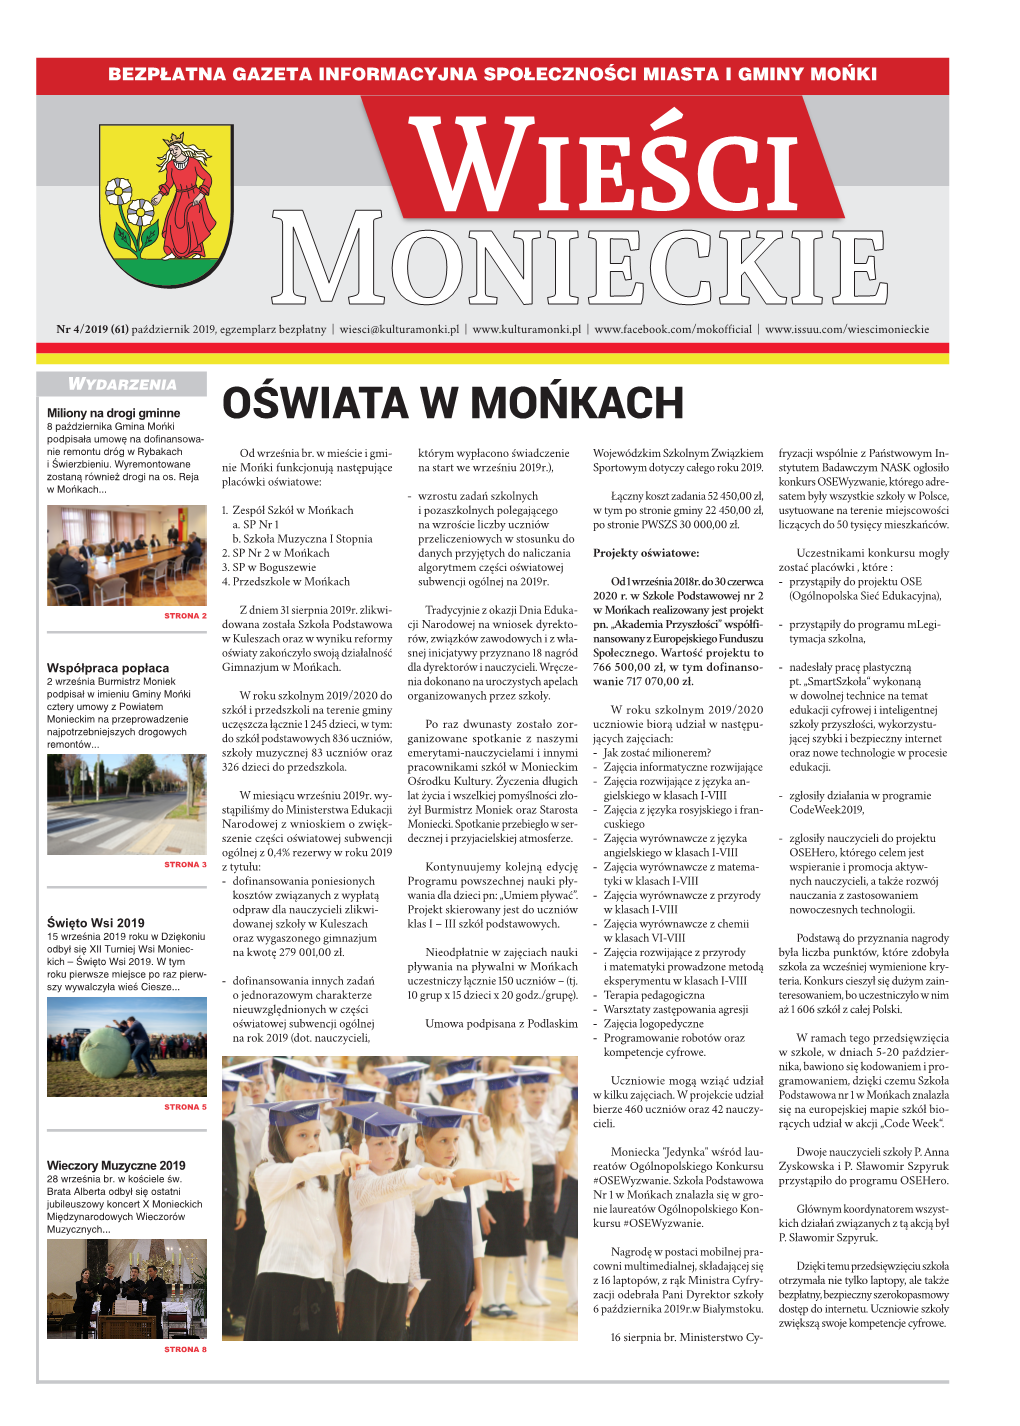 Wieści Monieckie Nr 4/2013 (28)